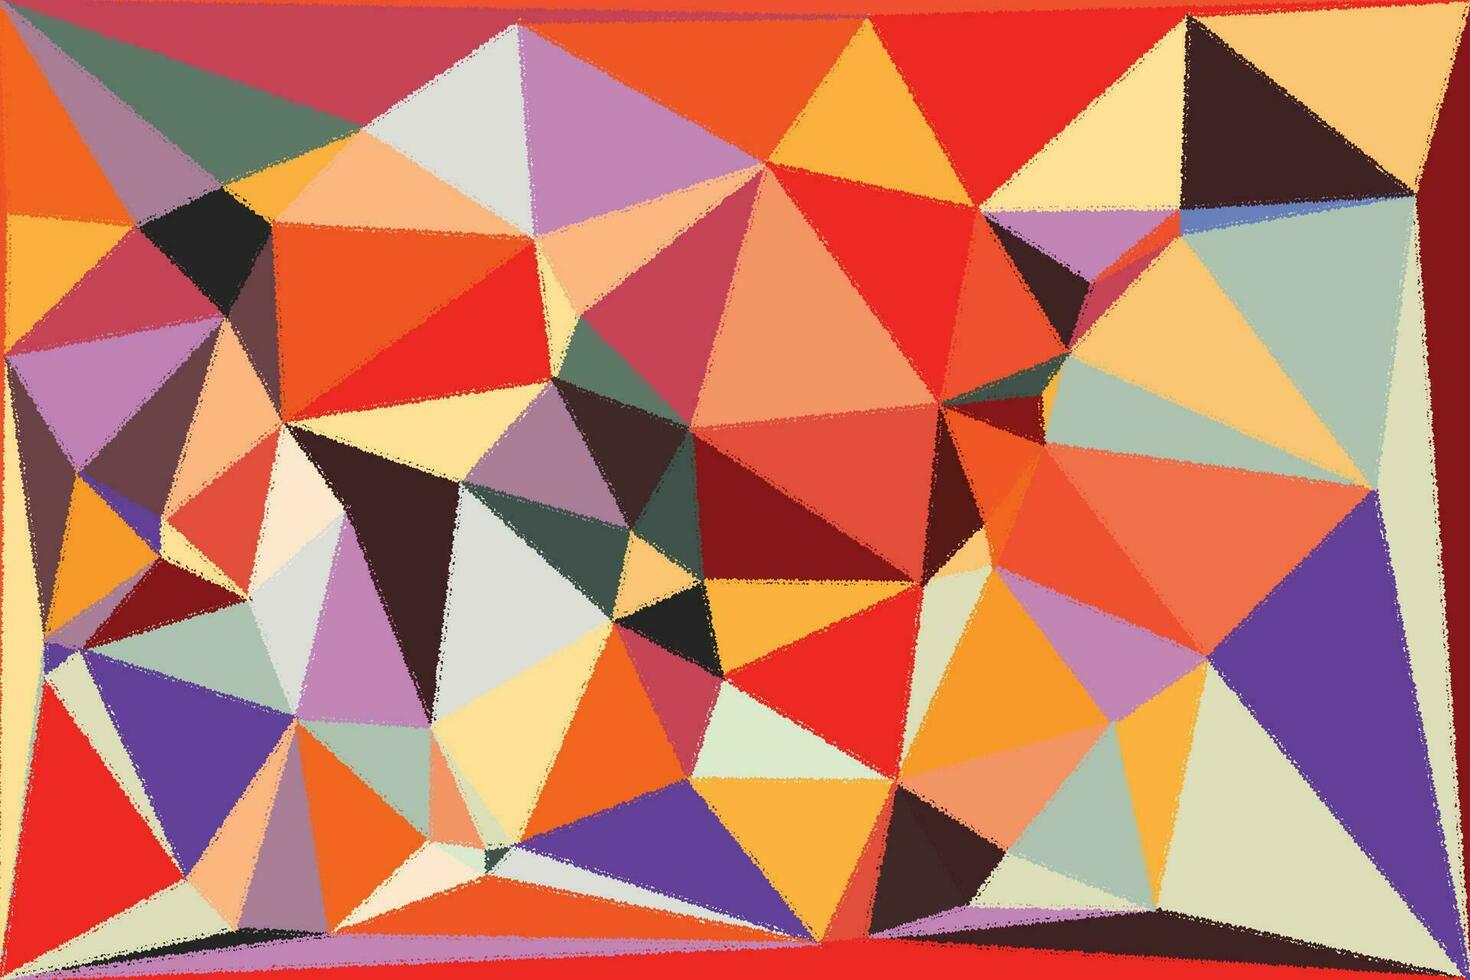 ein abstrakt Gemälde von Dreiecke im orange, Blau und rot vektor